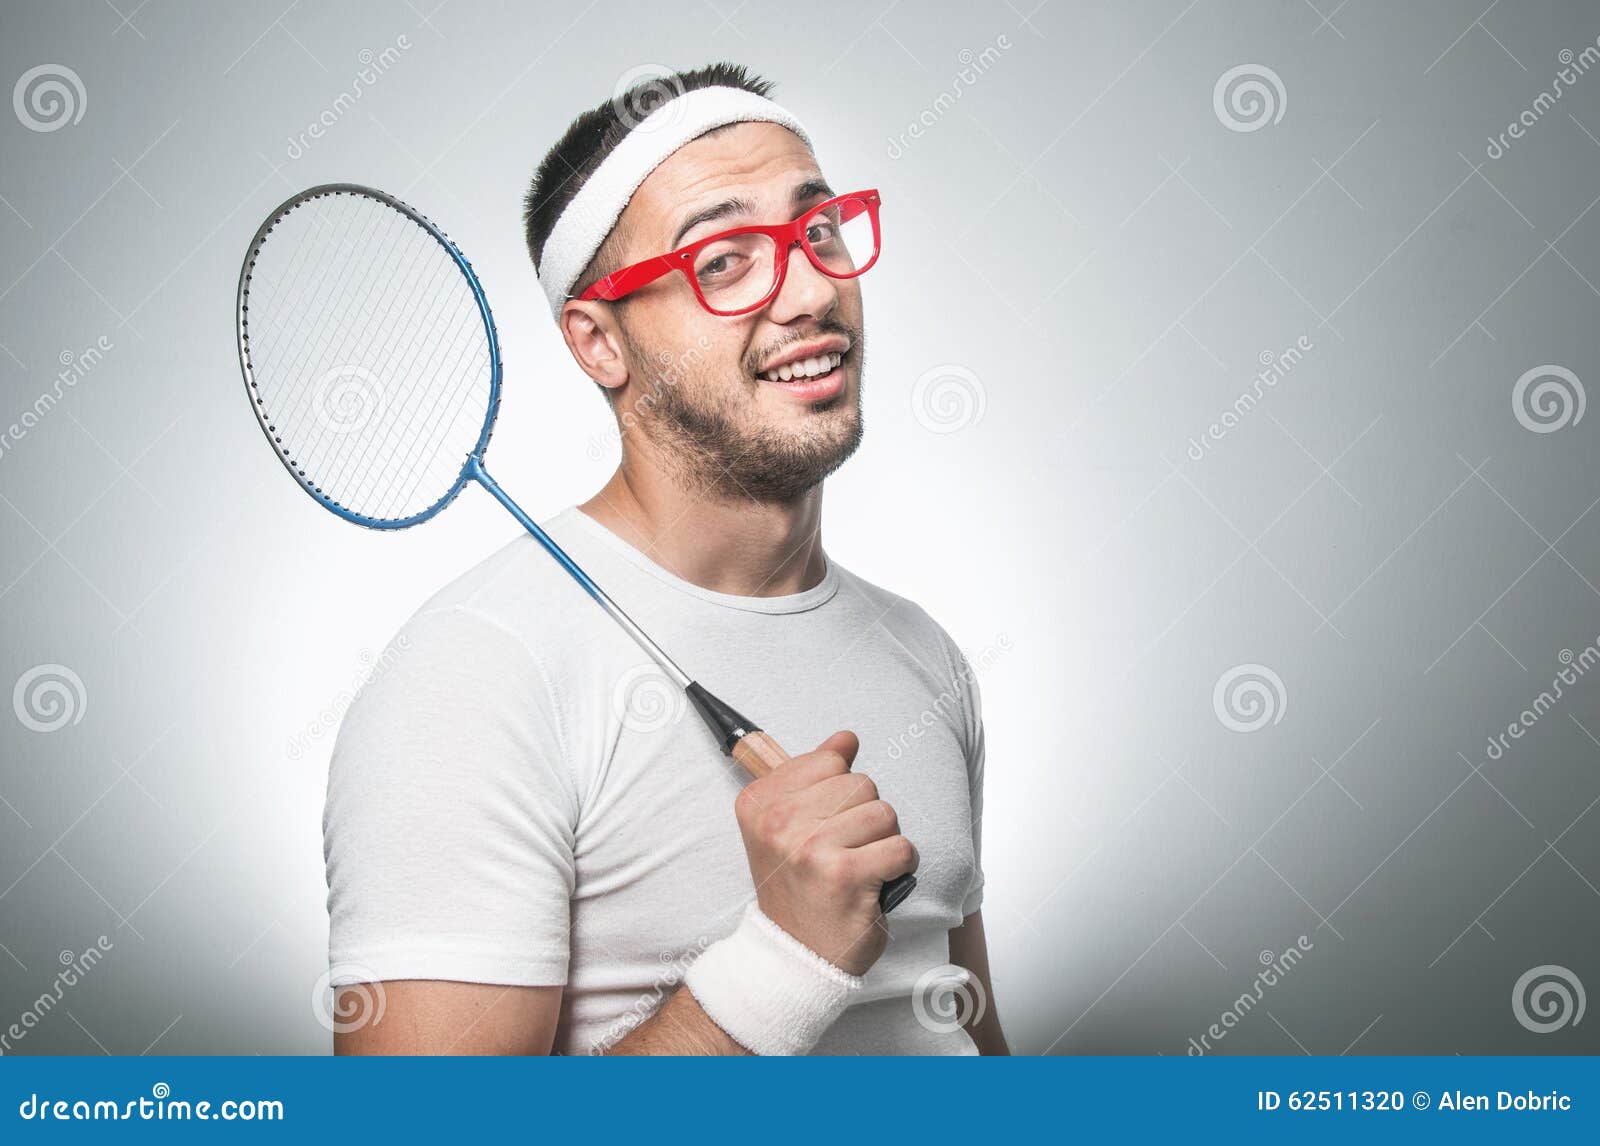 Joueur De Tennis Drôle Photo Stock Image Du Brillamment